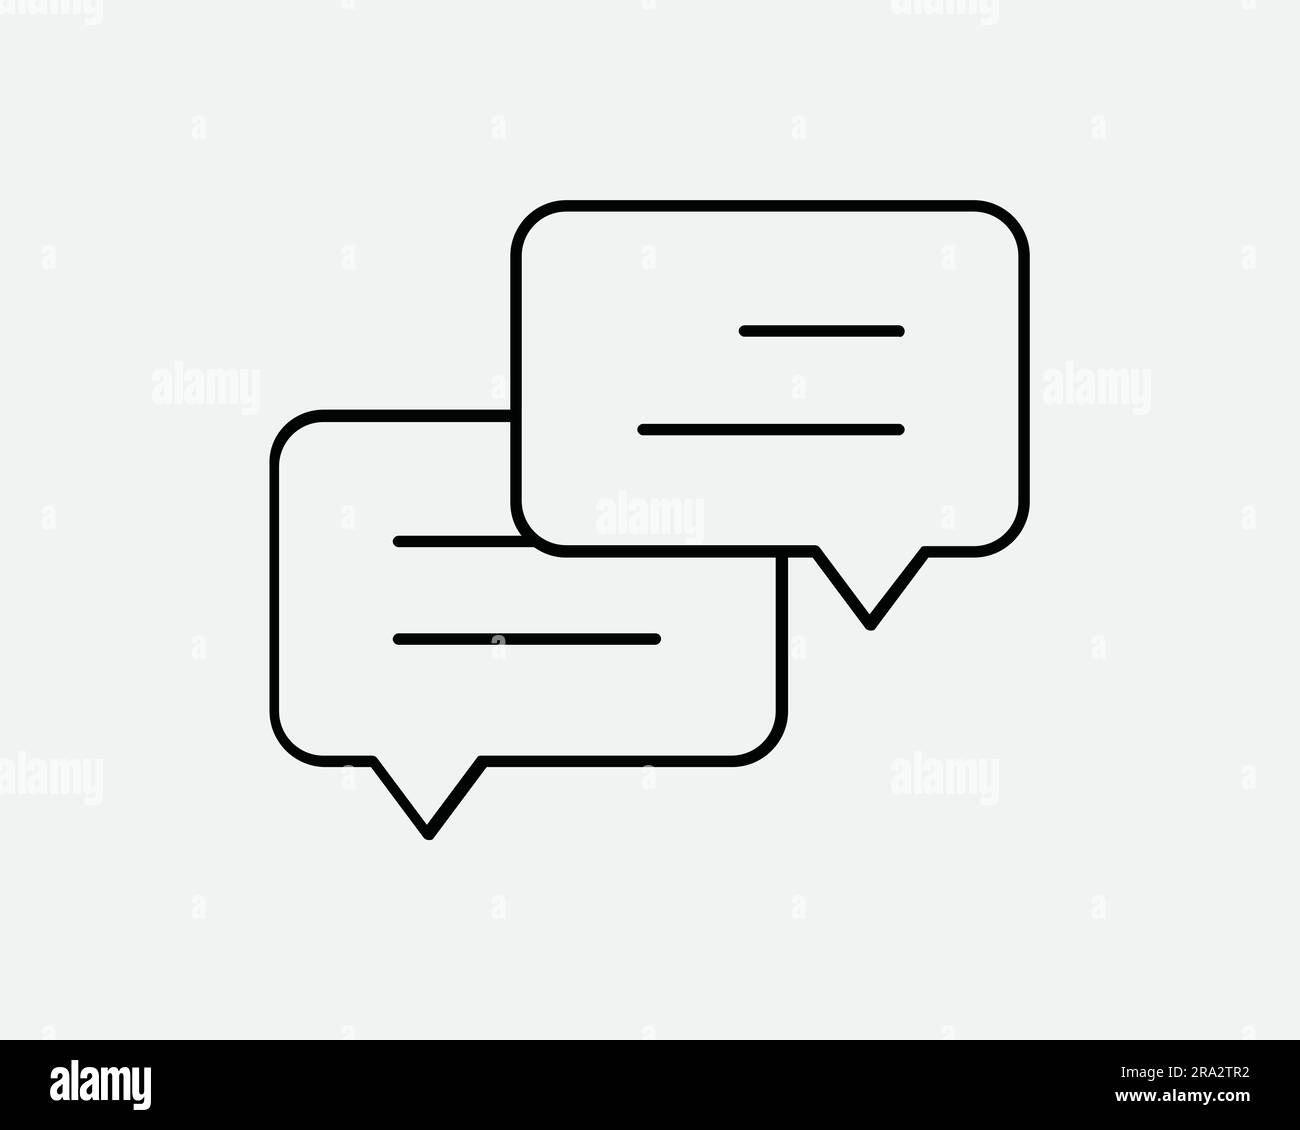 Dialogue Icon Dialog Speech Bubble Chat Box Comment Forum Message